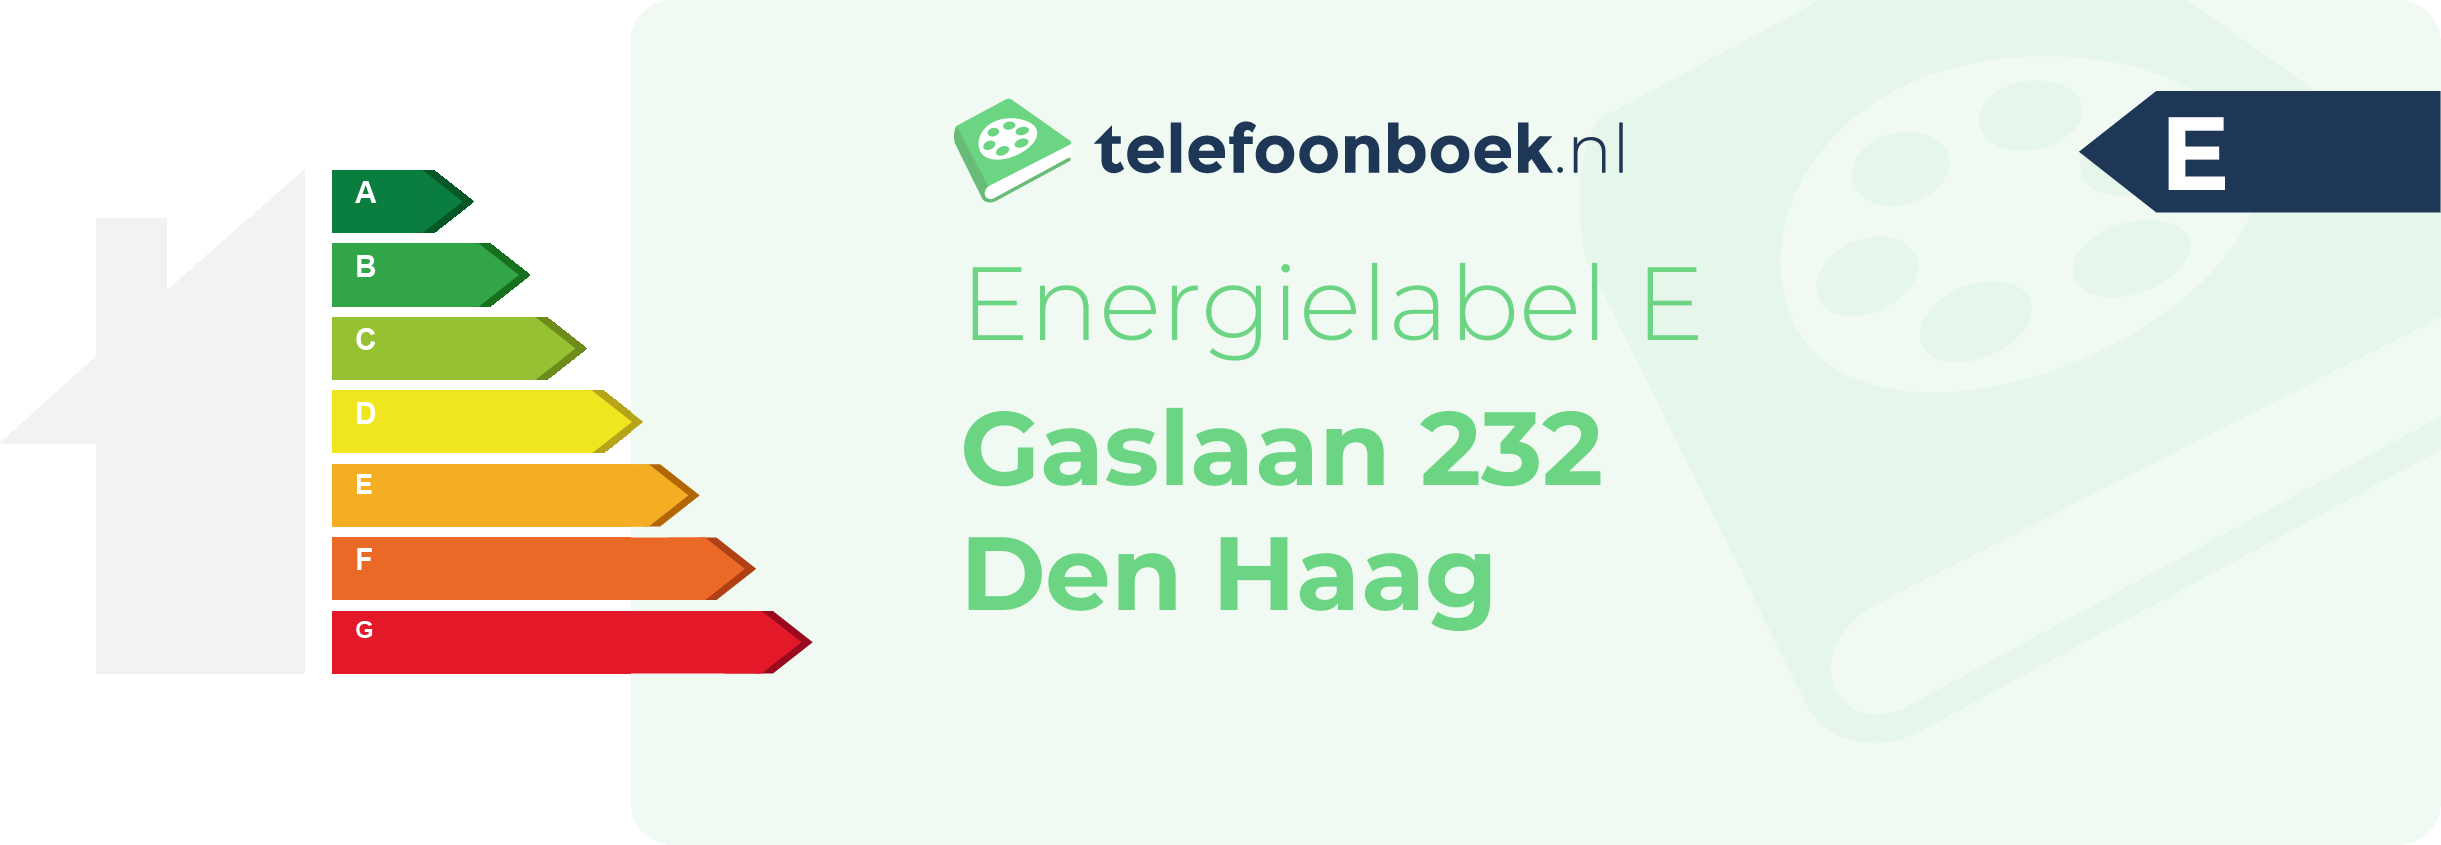 Energielabel Gaslaan 232 Den Haag